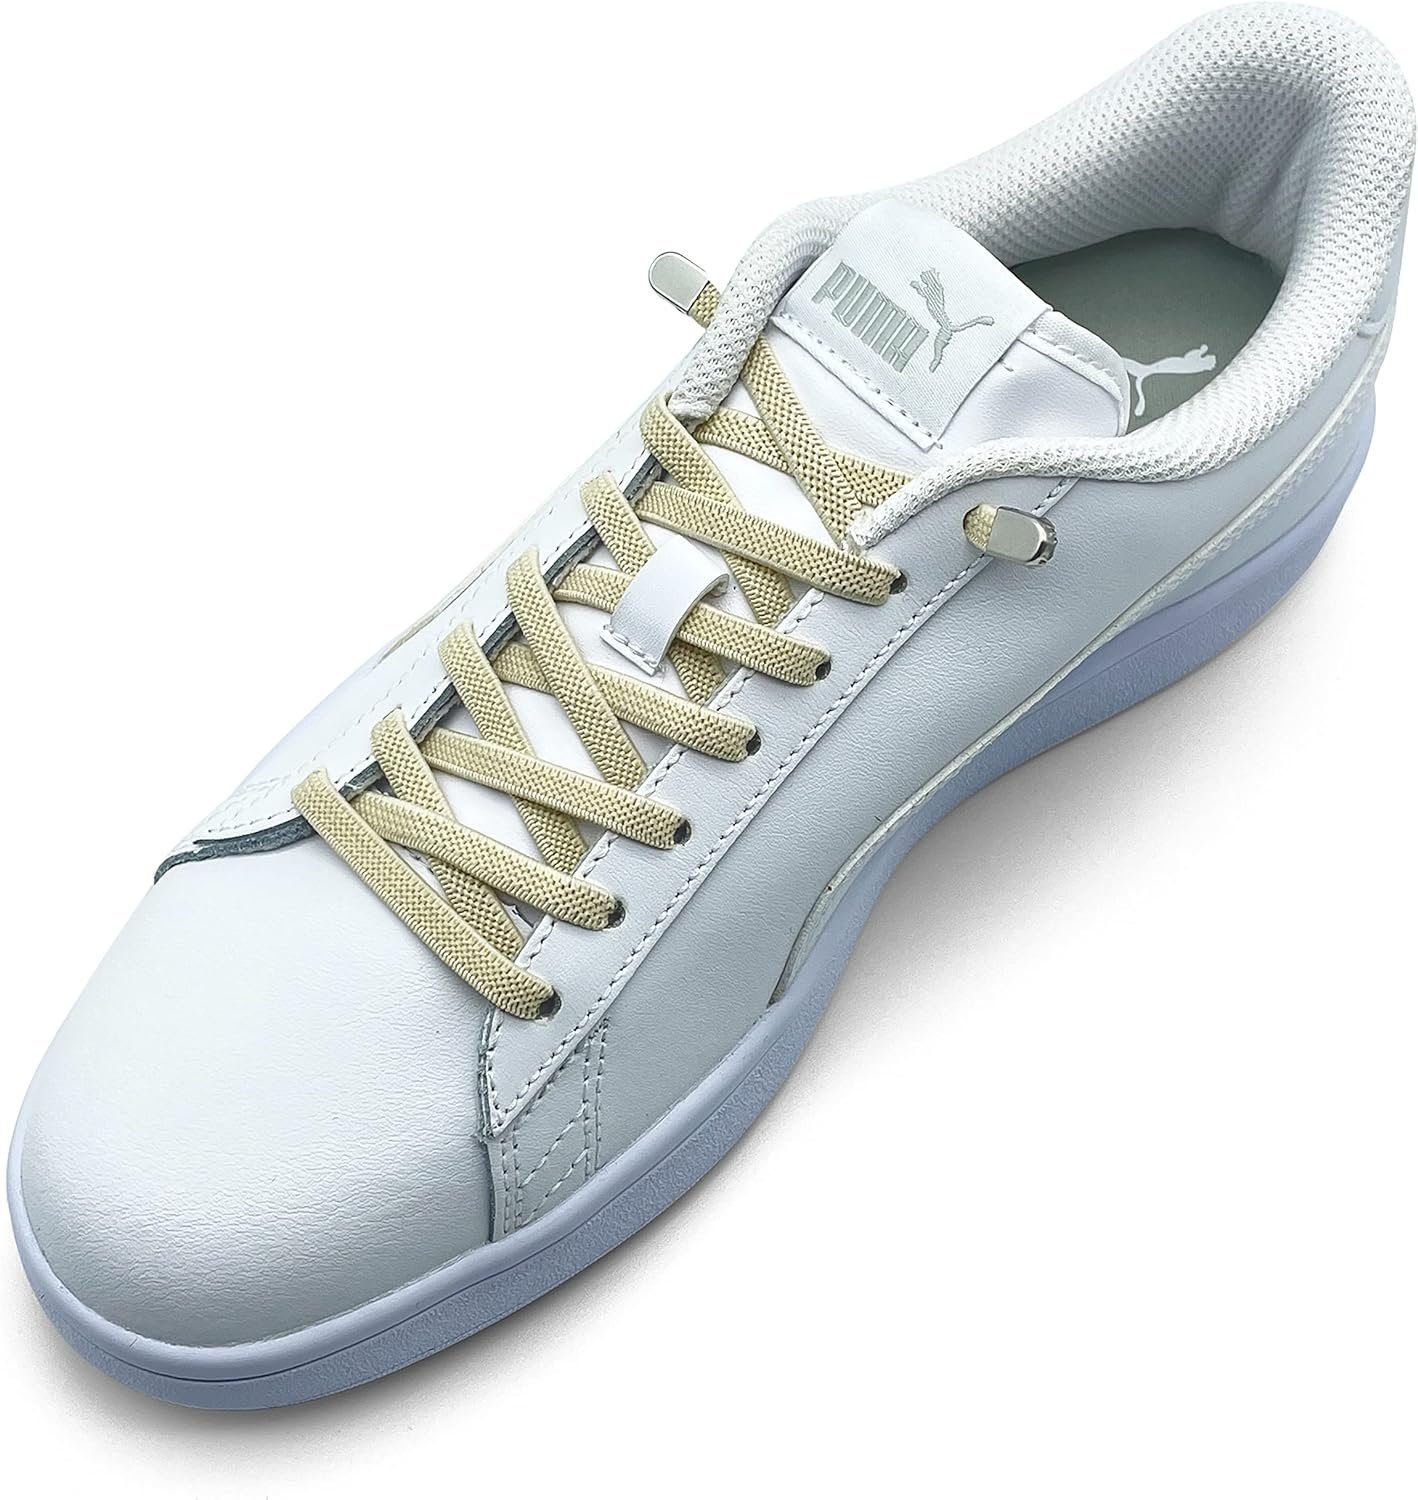 4 für Enden ELANOX 2 Schnürsenkel 8 elastische Schuhe beige mit silber Clips, Schnürsenkel St. in (Clips) Stück inkl. - Paar